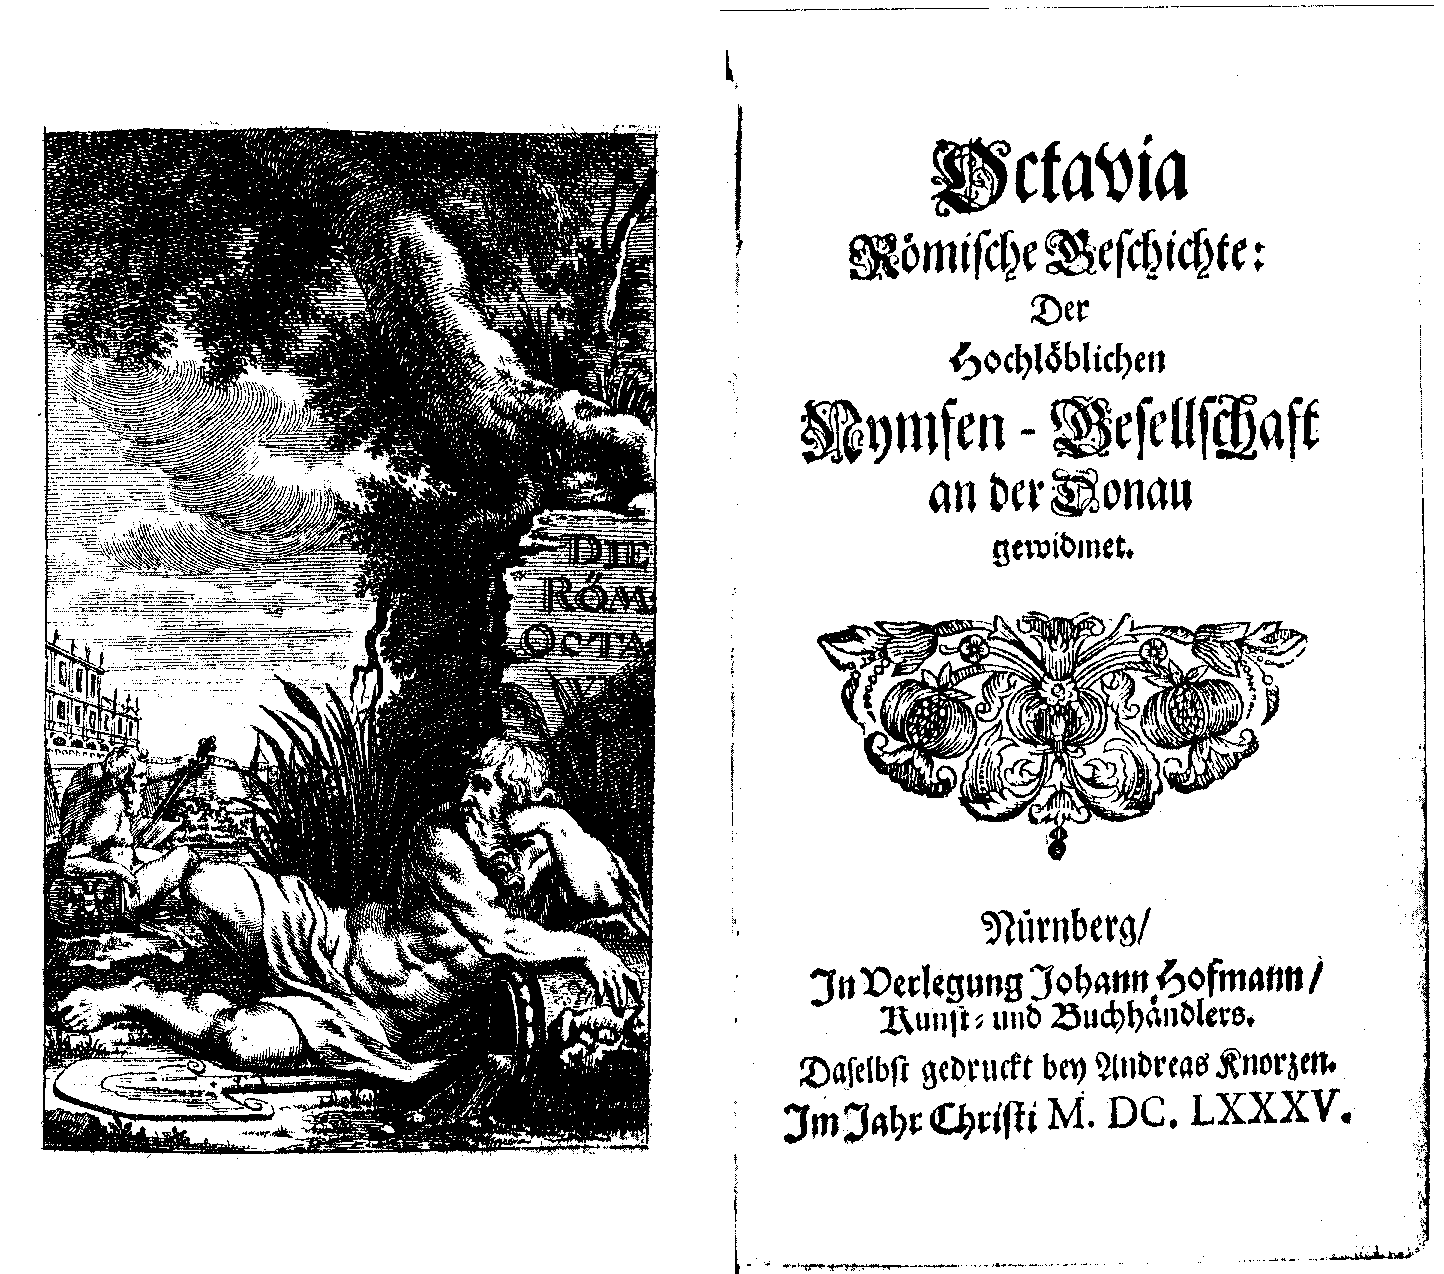 [Anton Ulrich Herzog zu Braunschweig und Lüneburg,] Octavia römische Geschichte, [vol. 1] (Nürnberg: J. Hoffmann, 1685).